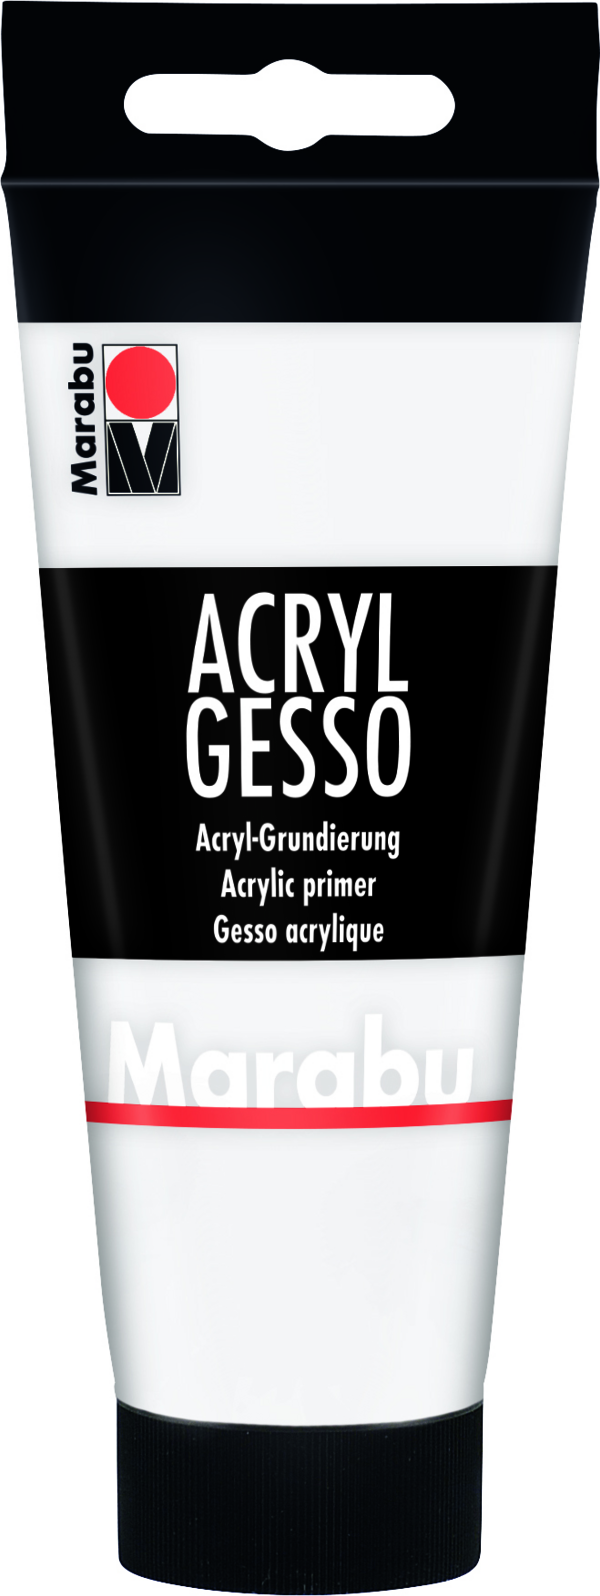 Marabu Acryl Gesso